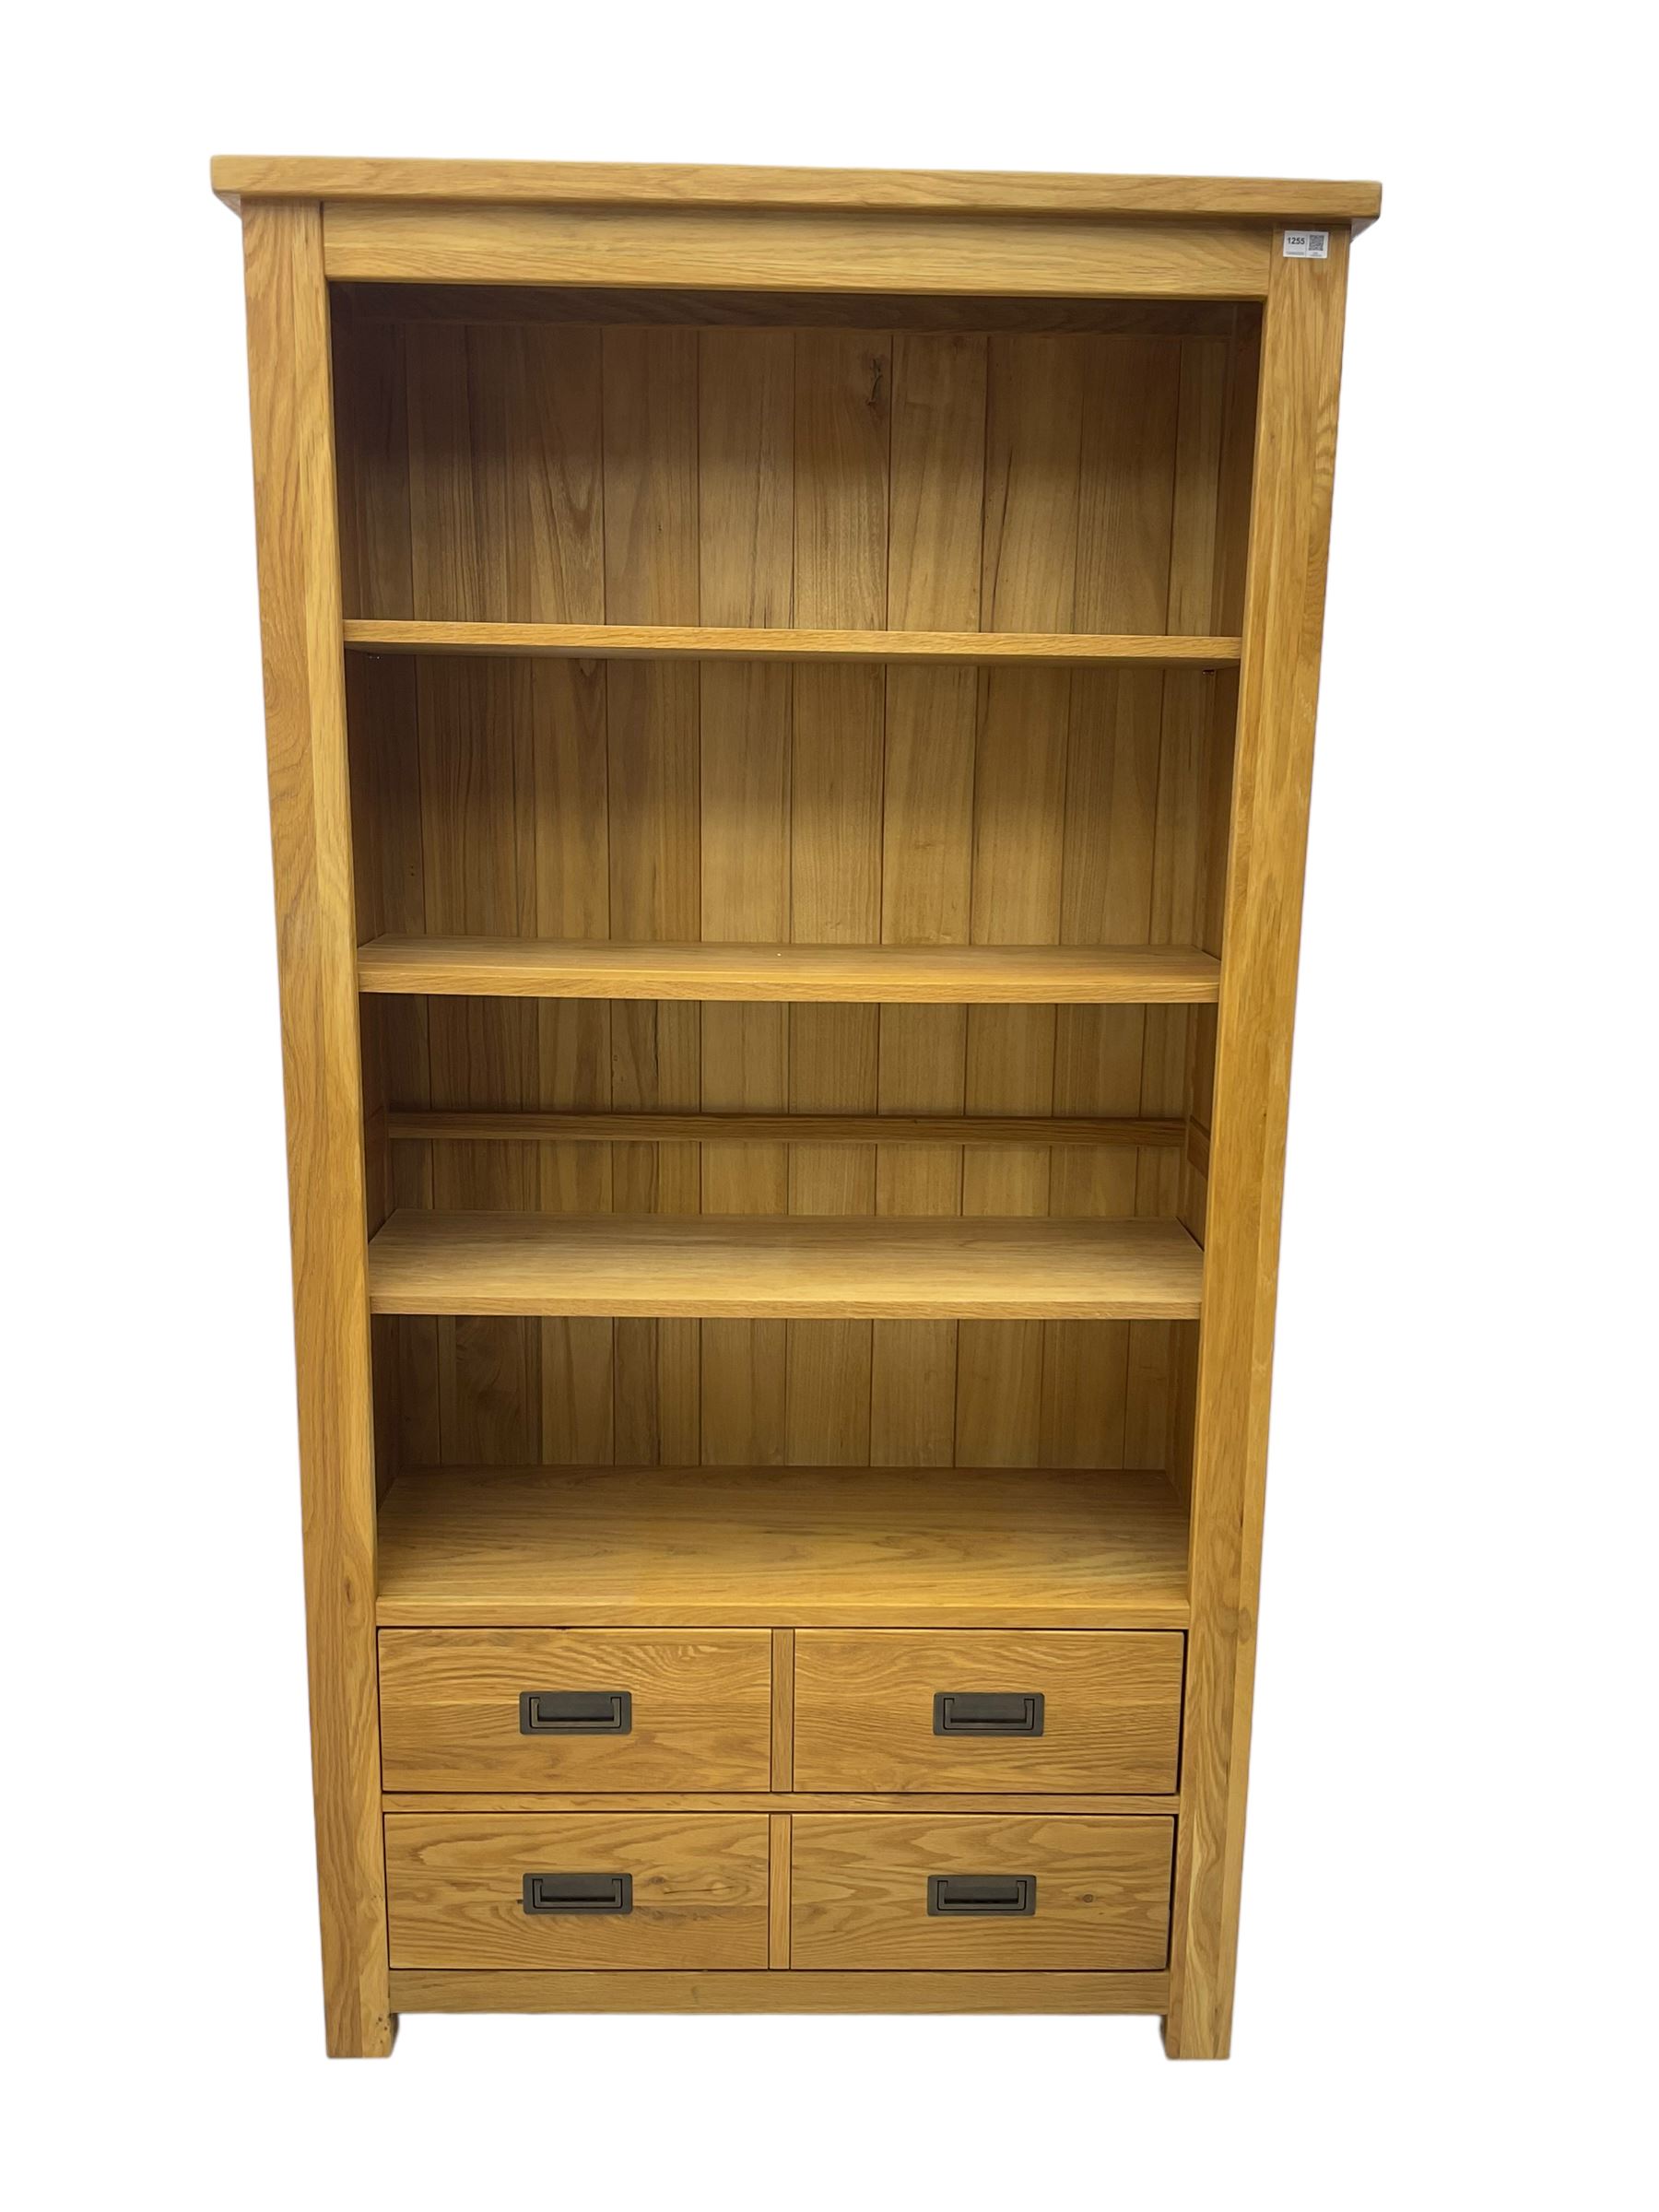 'Galloway' oak open wide bookcase